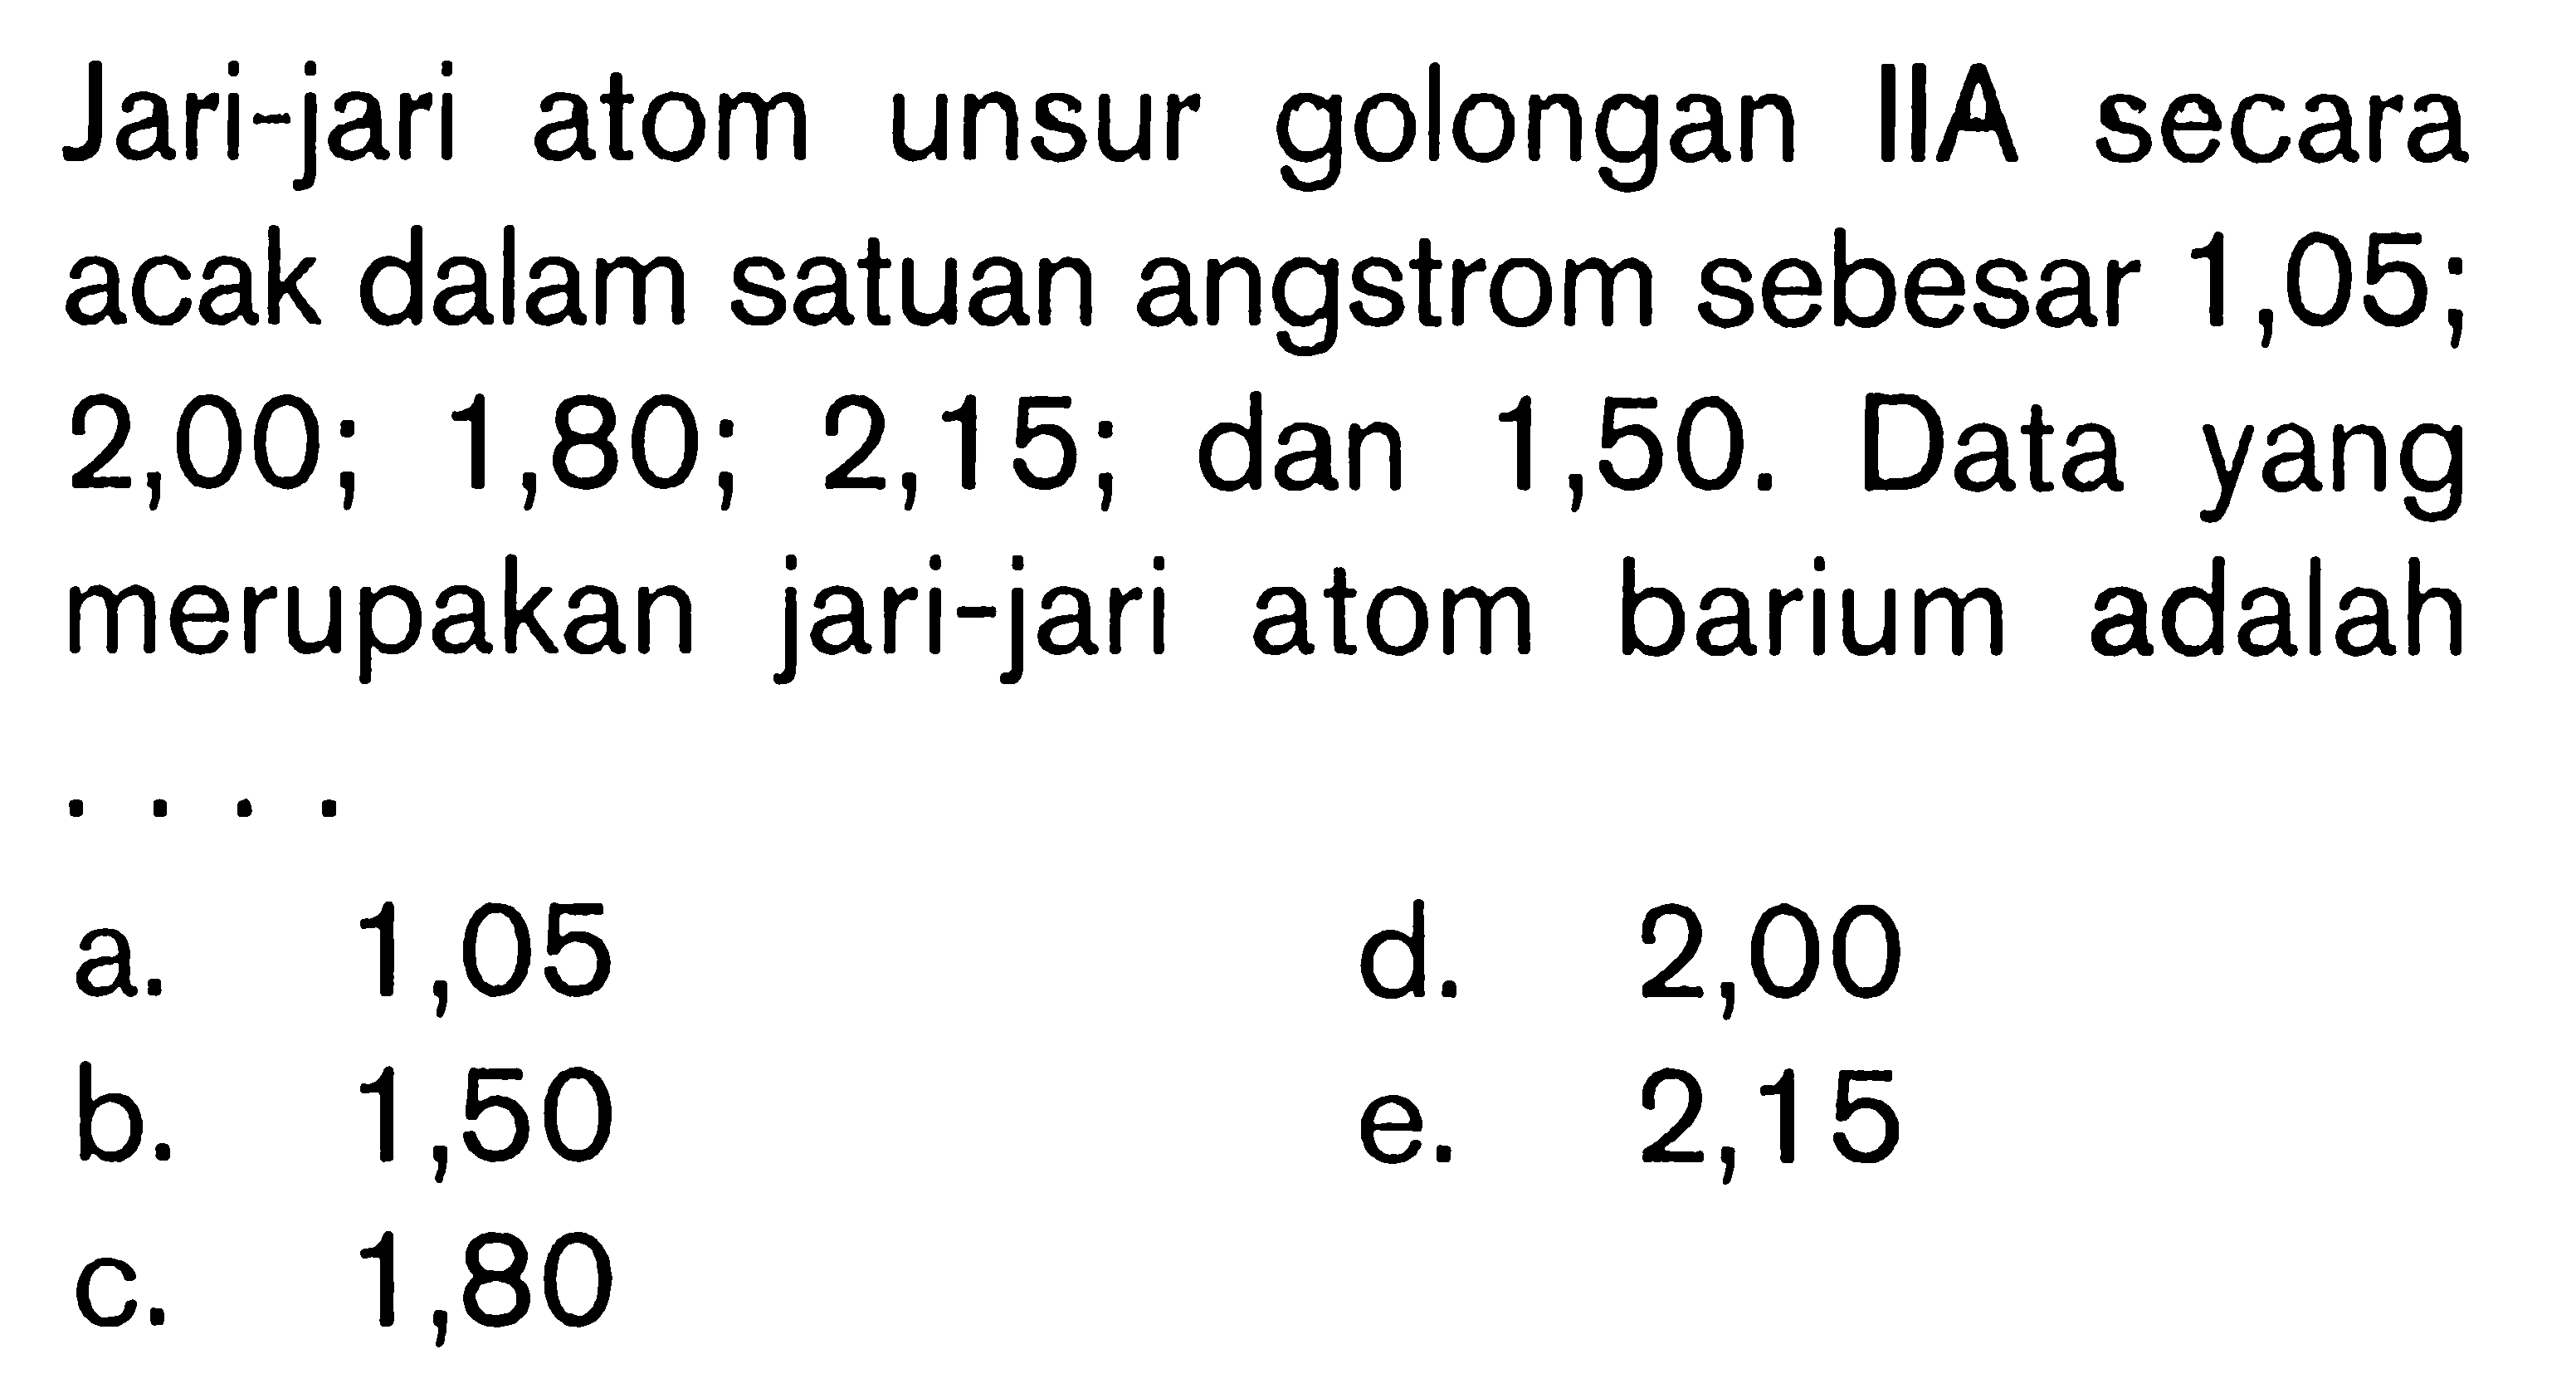 Jari-jari atom unsur golongan IIA secara acak dalam satuan angstrom sebesar 1,05; 2,00; 1,80; 2,15; dan 1,50. Data yang merupakan jari-jari atom barium adalah ....